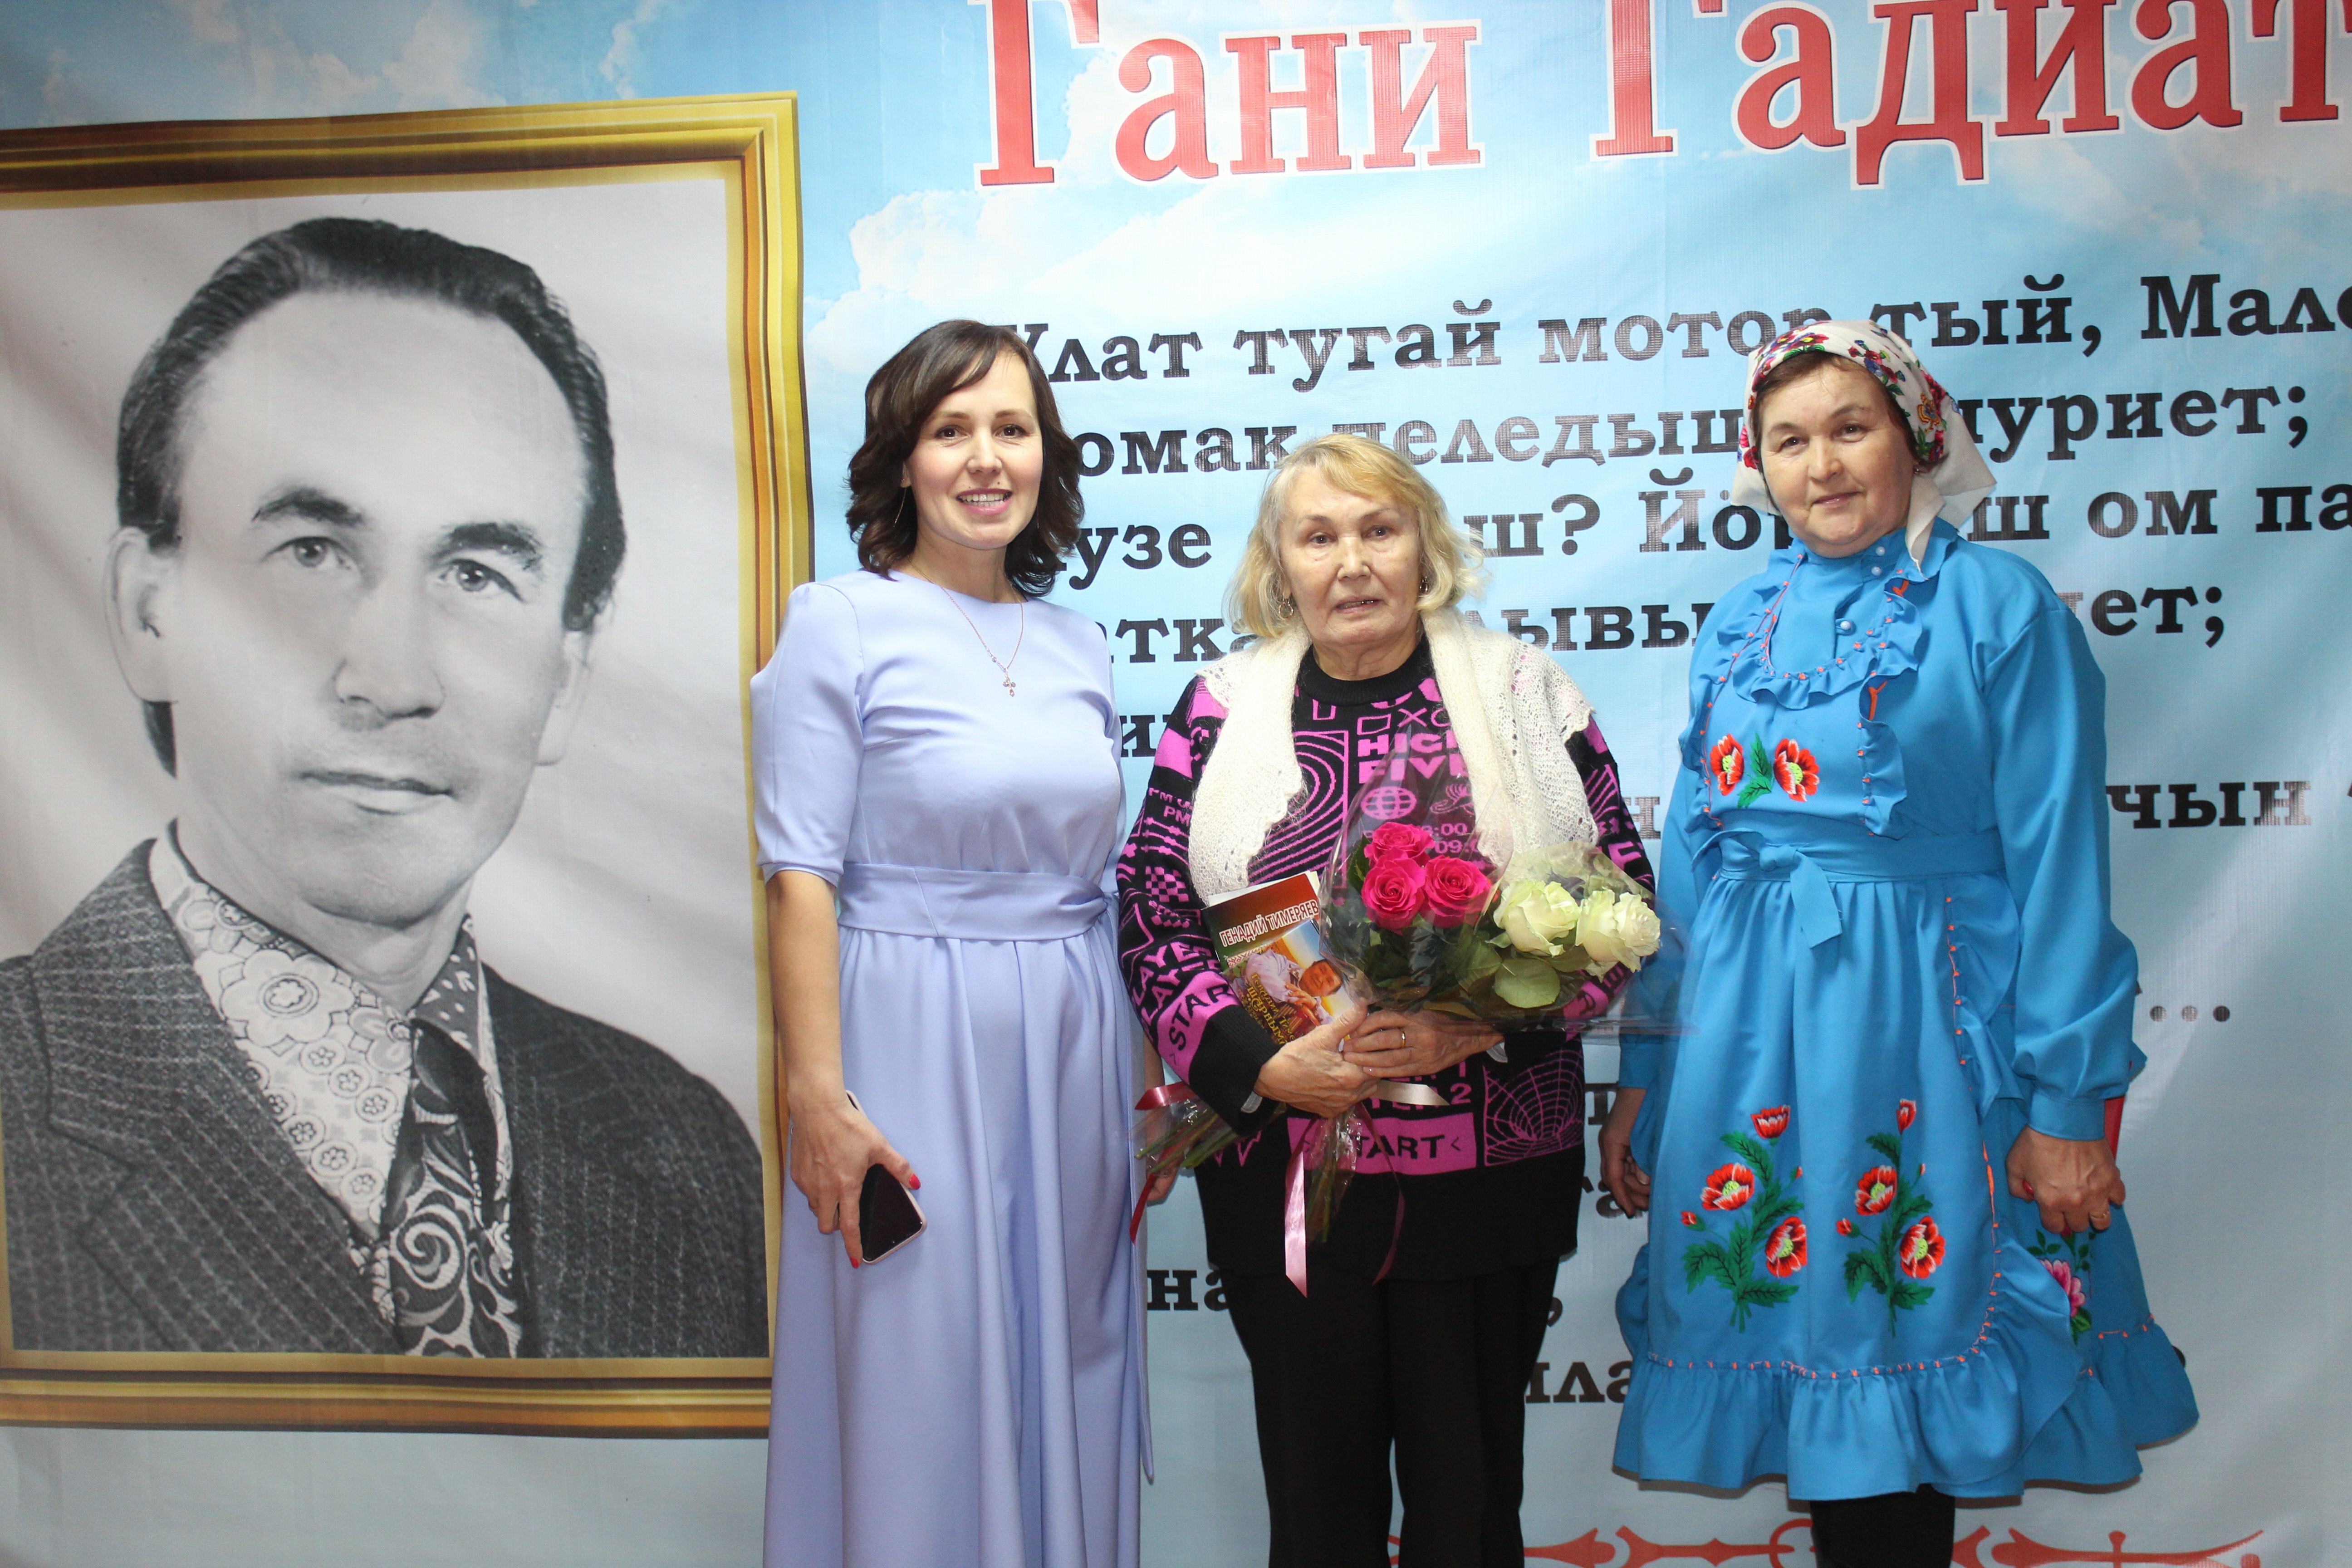 В деревне Бабаево состоялся литературно-музыкальный вечер в памяти марийского поэта Гани Гадиатова